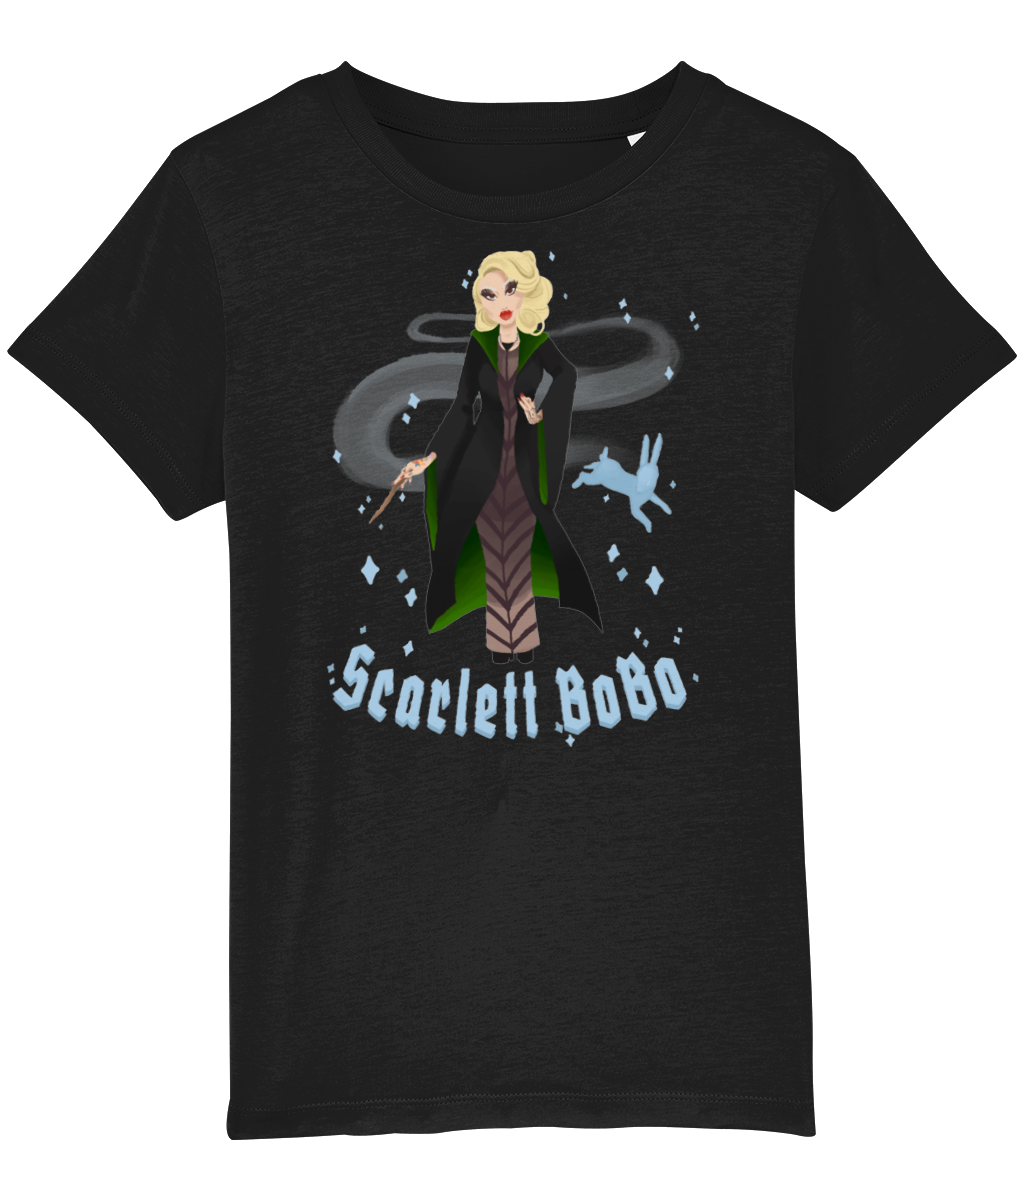 Scarlett Bobo - Slytherin Bobo Kids T-Shirt - SNATCHED MERCH